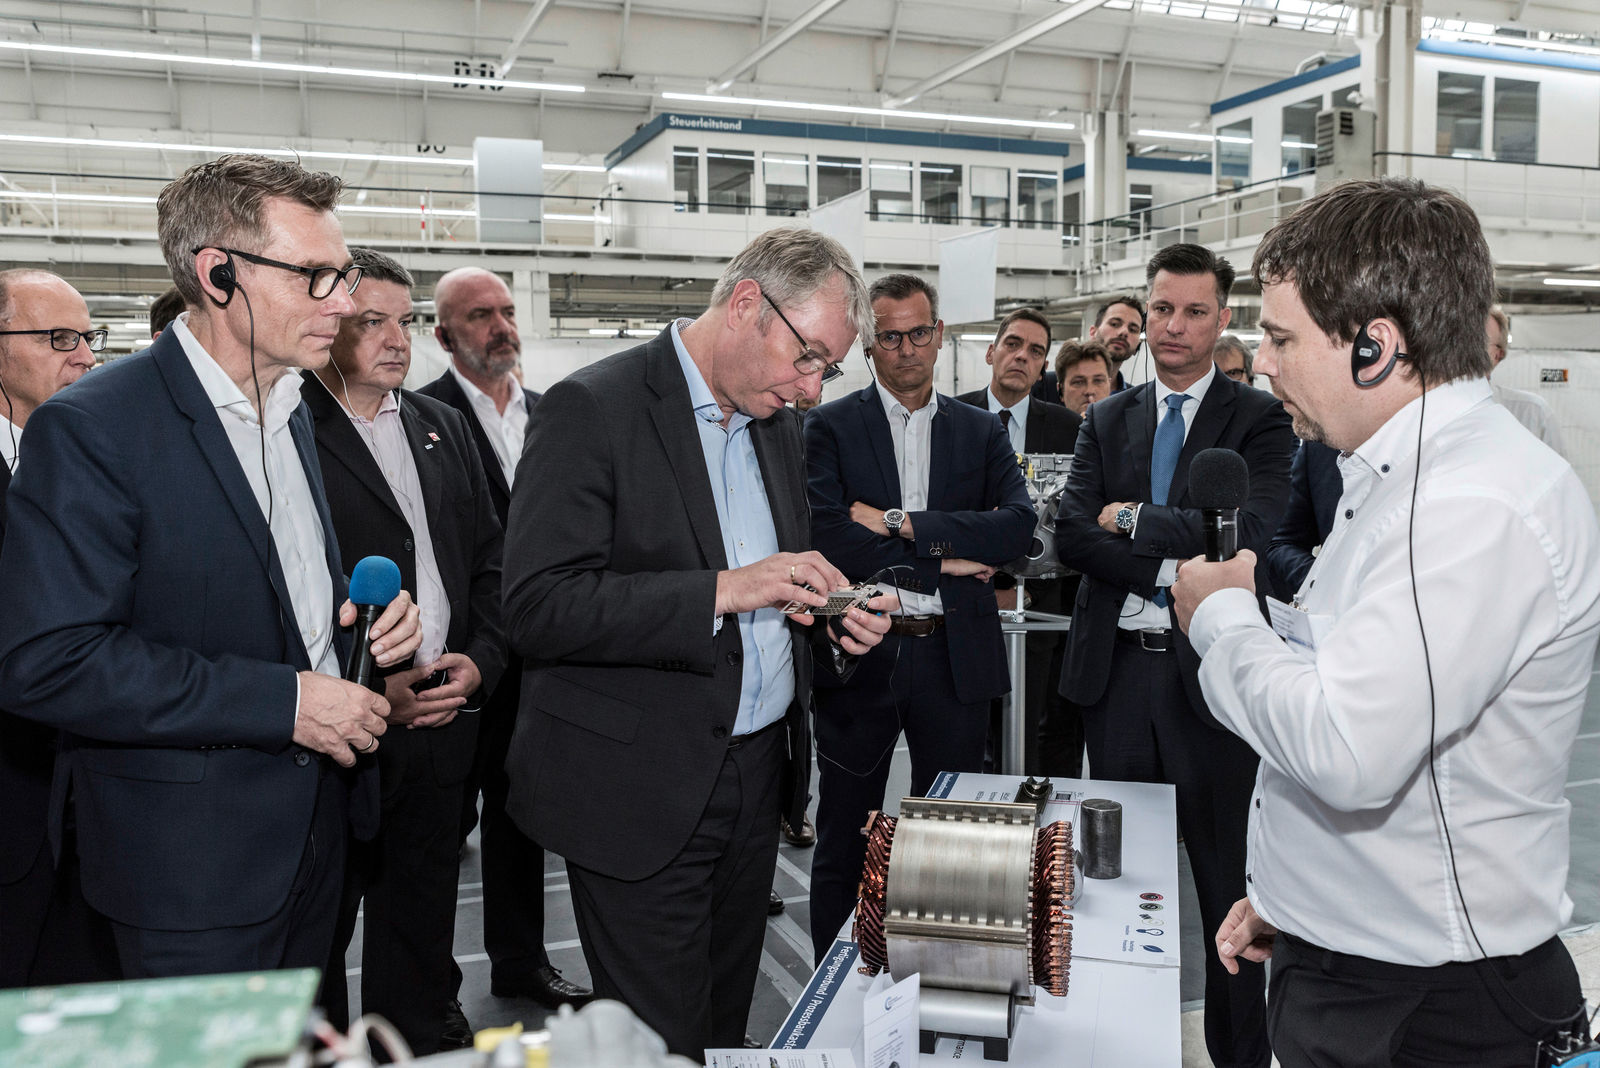 Standortsymposium der Volkswagen Konzern Komponente in Kassel: Mit innovativen Prozessen und Produkten auf dem Weg zur Transformation